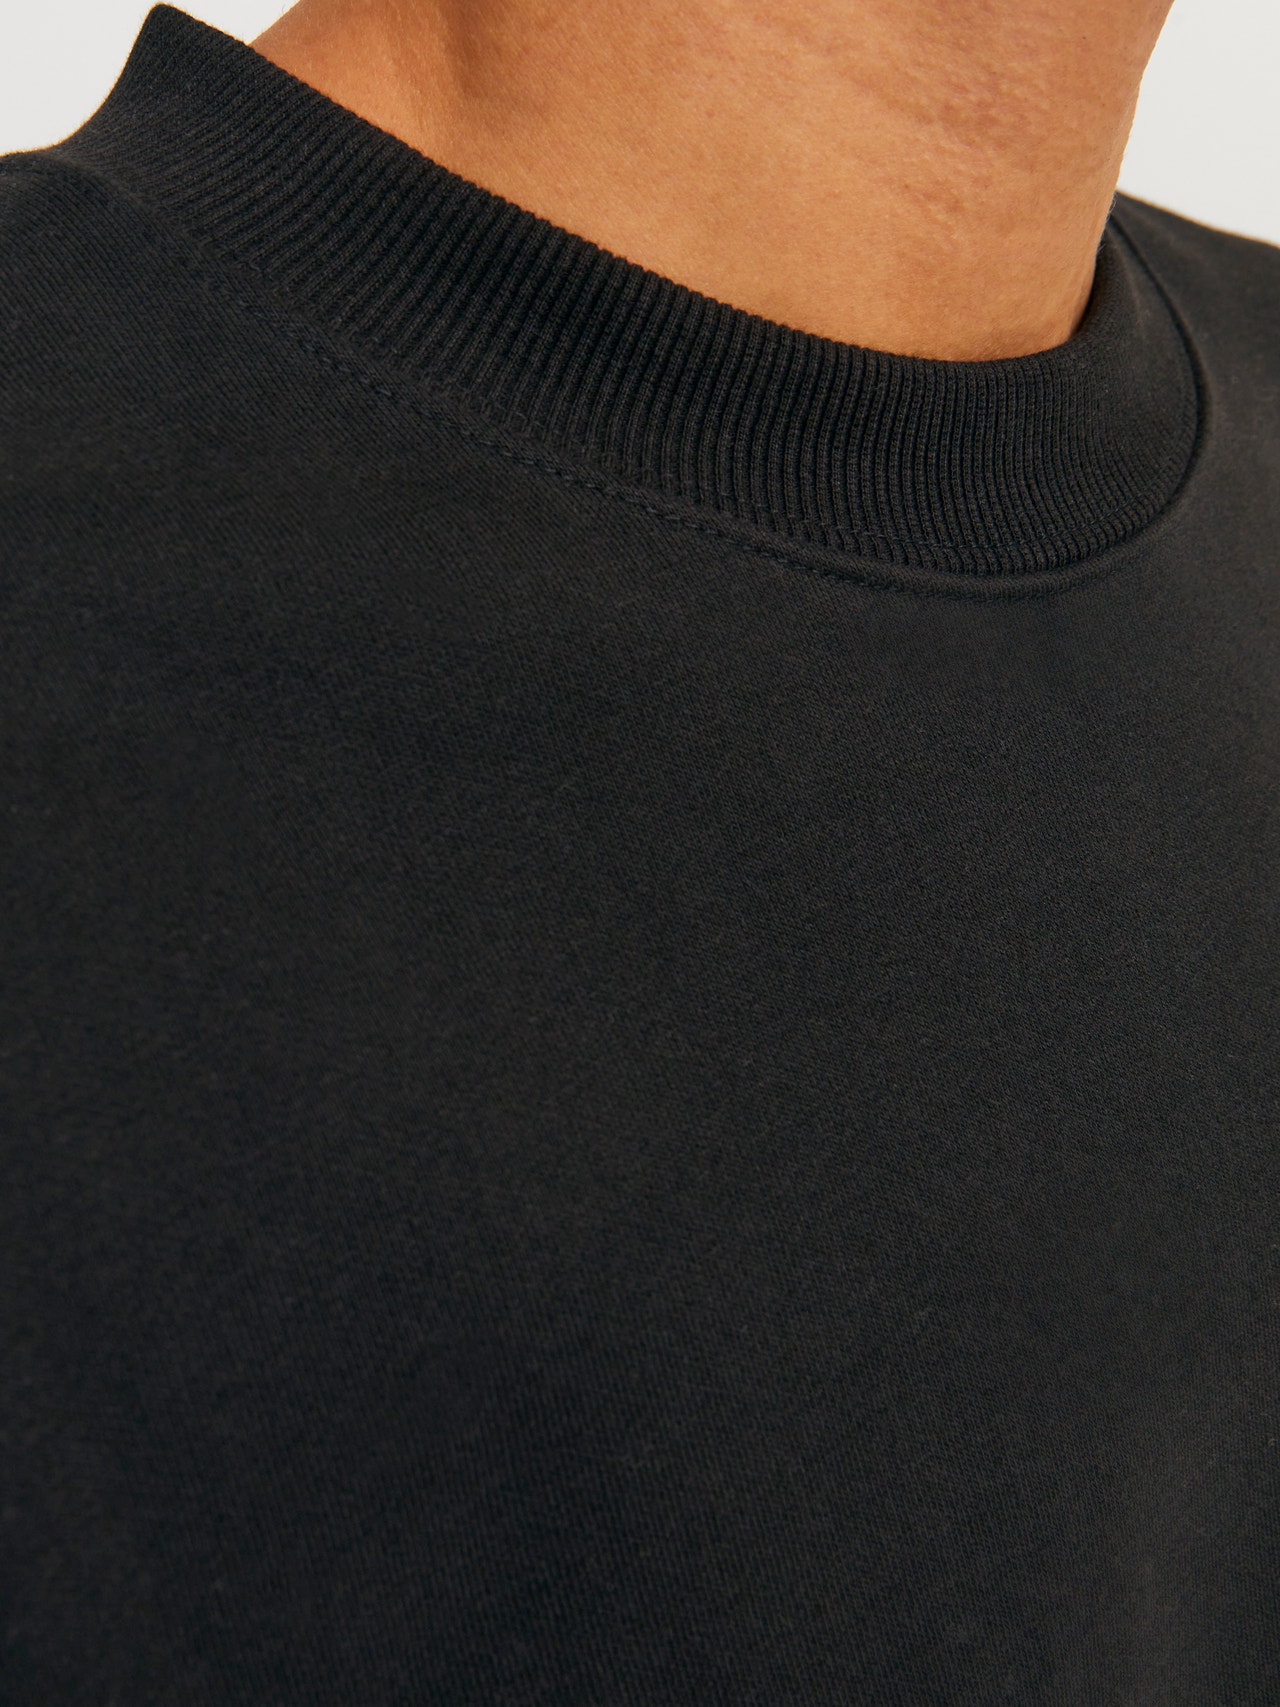 Jack & Jones Plain Crew neck Sweatshirt -Black - 12252408